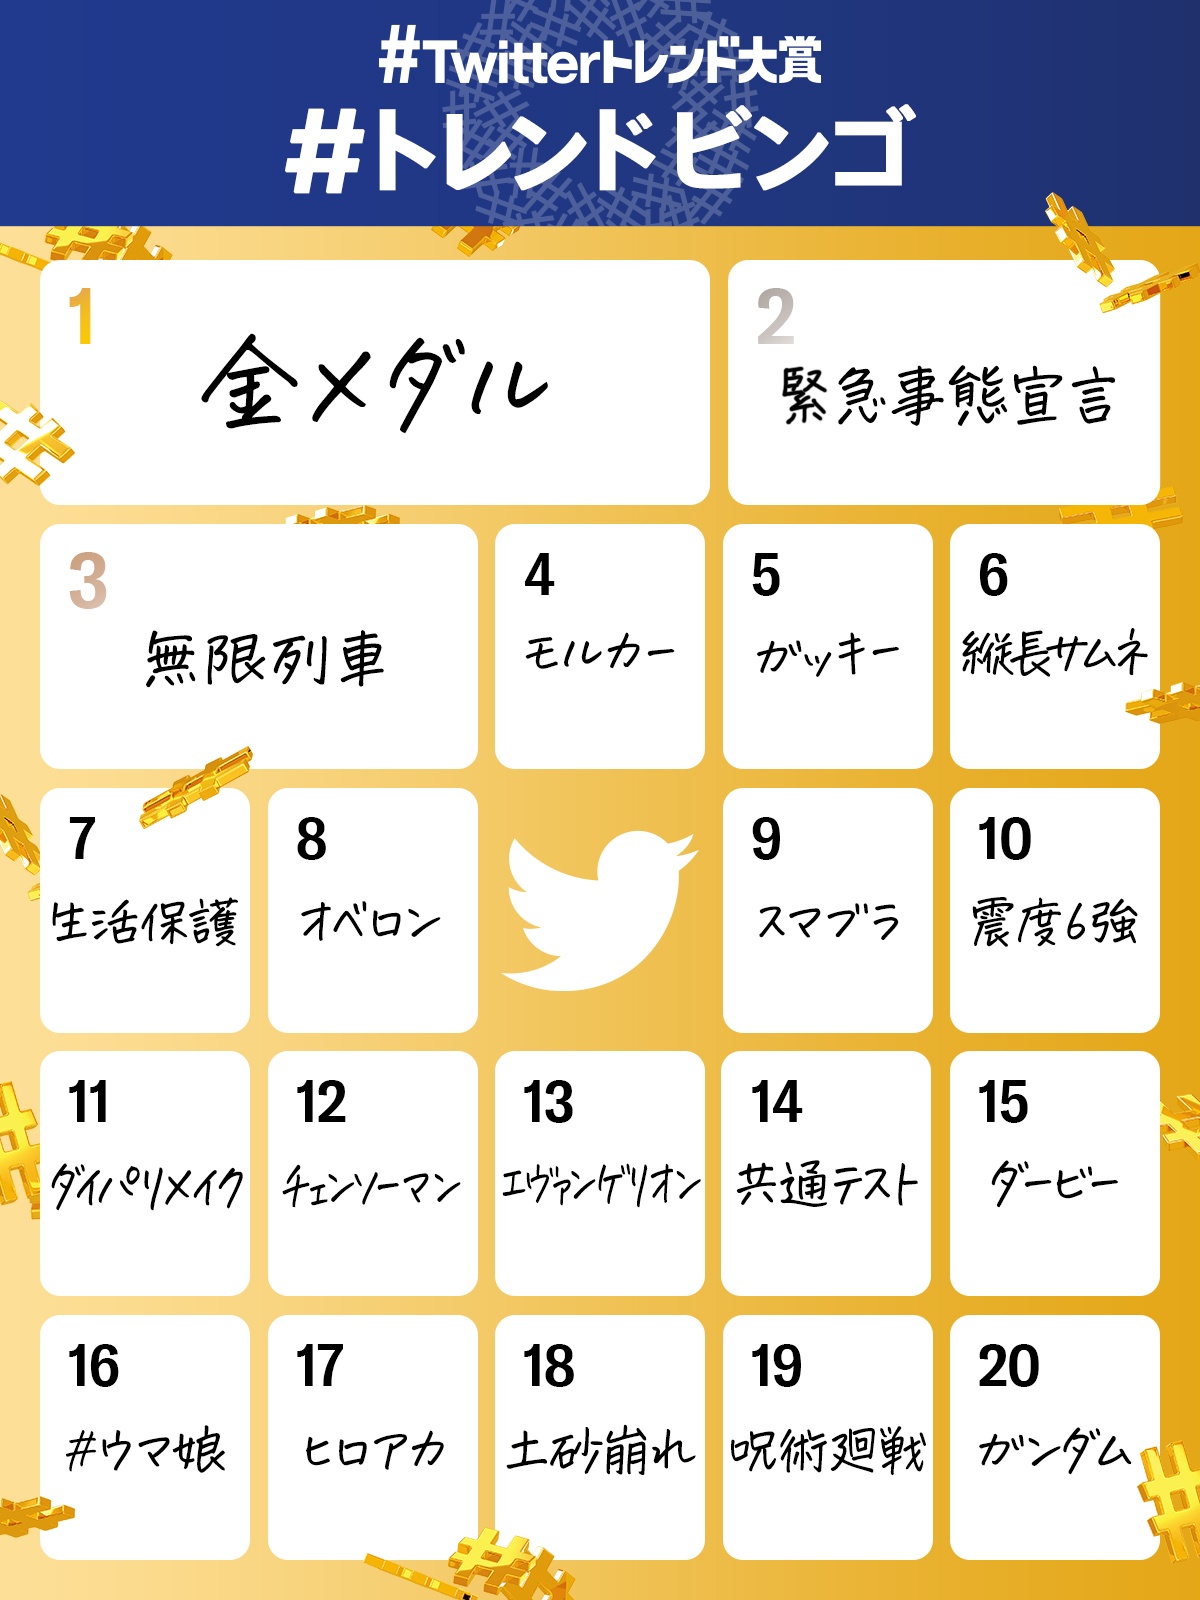 Kimetsu no Yaiba, Chainsaw Man y Evangelion entre las tendencias de Twitter más populares este año